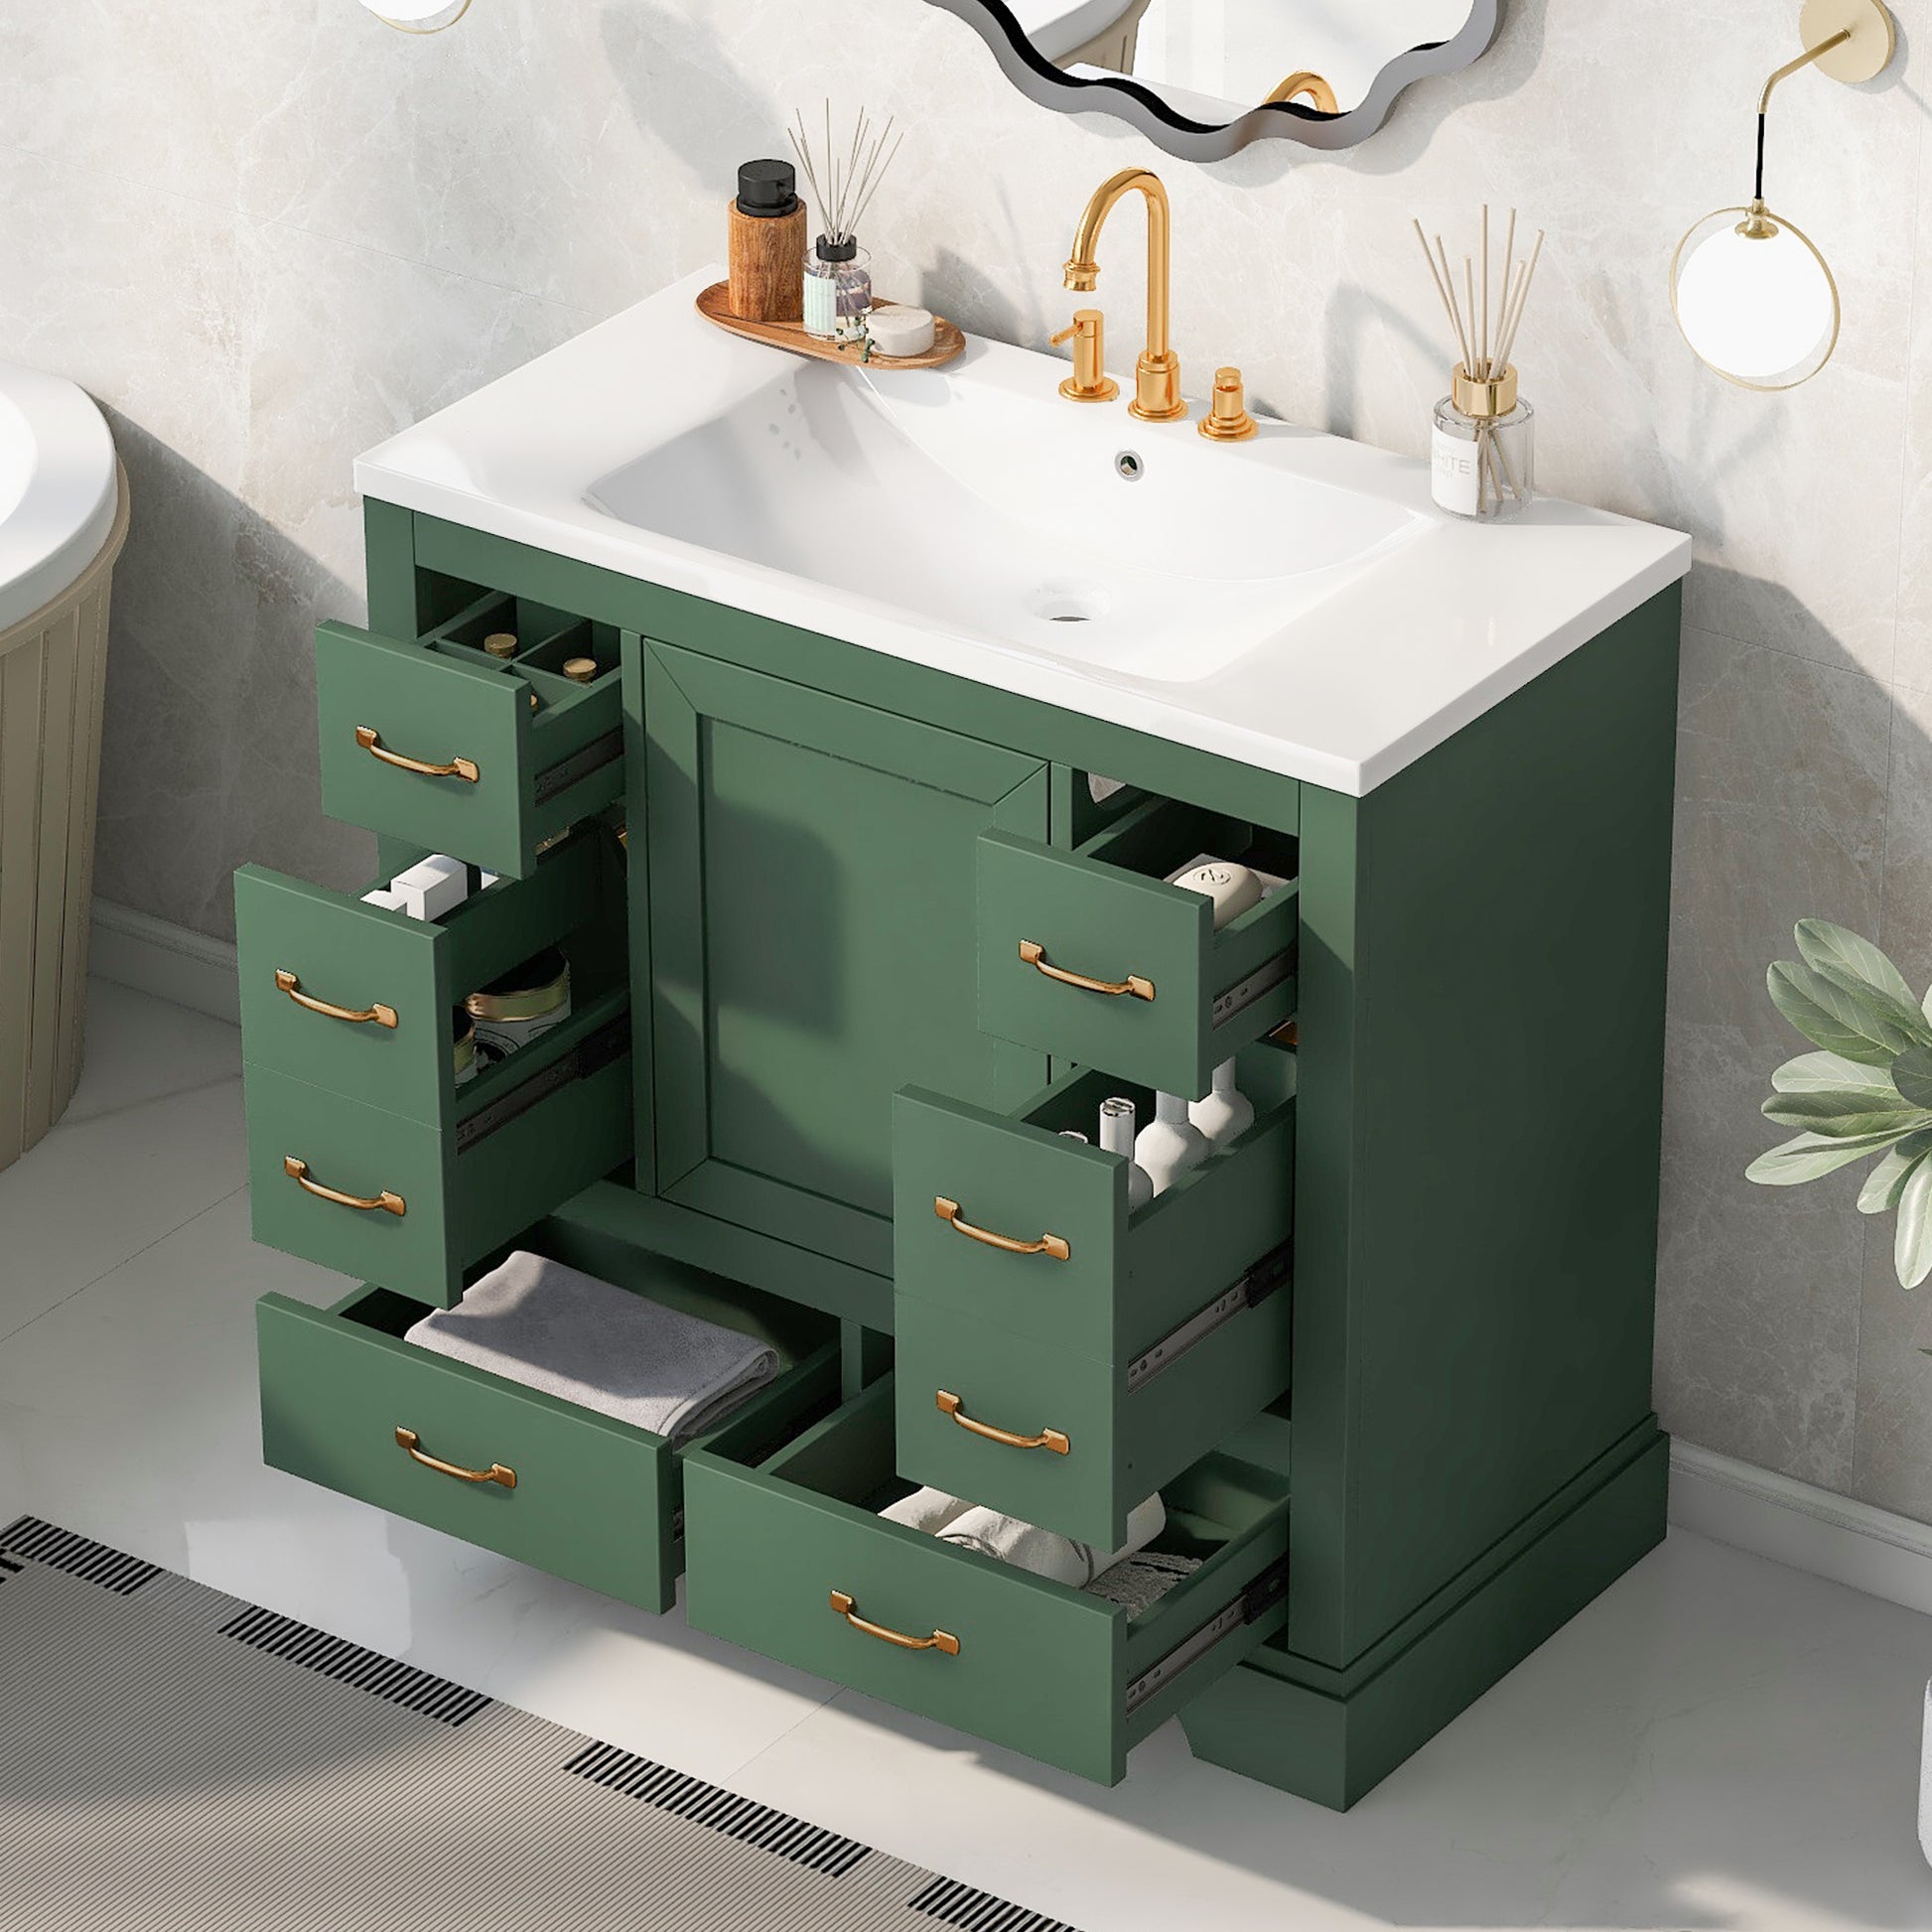 36" Bathroom Vanity With Sink Combo, Six Drawers